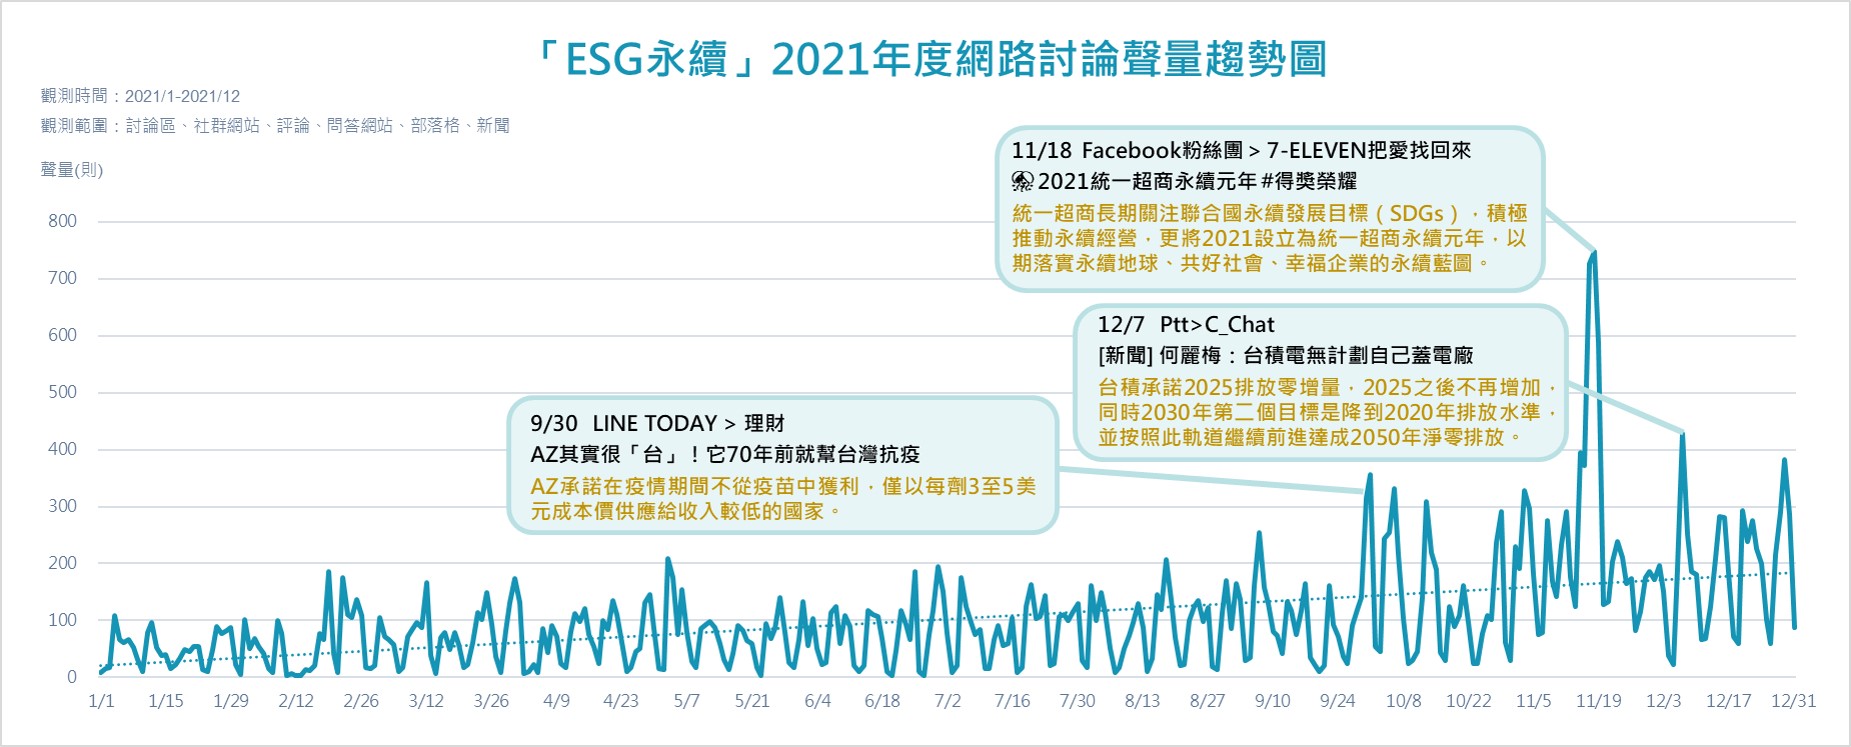 「ESG永續」2021年度網路討論聲量趨勢圖